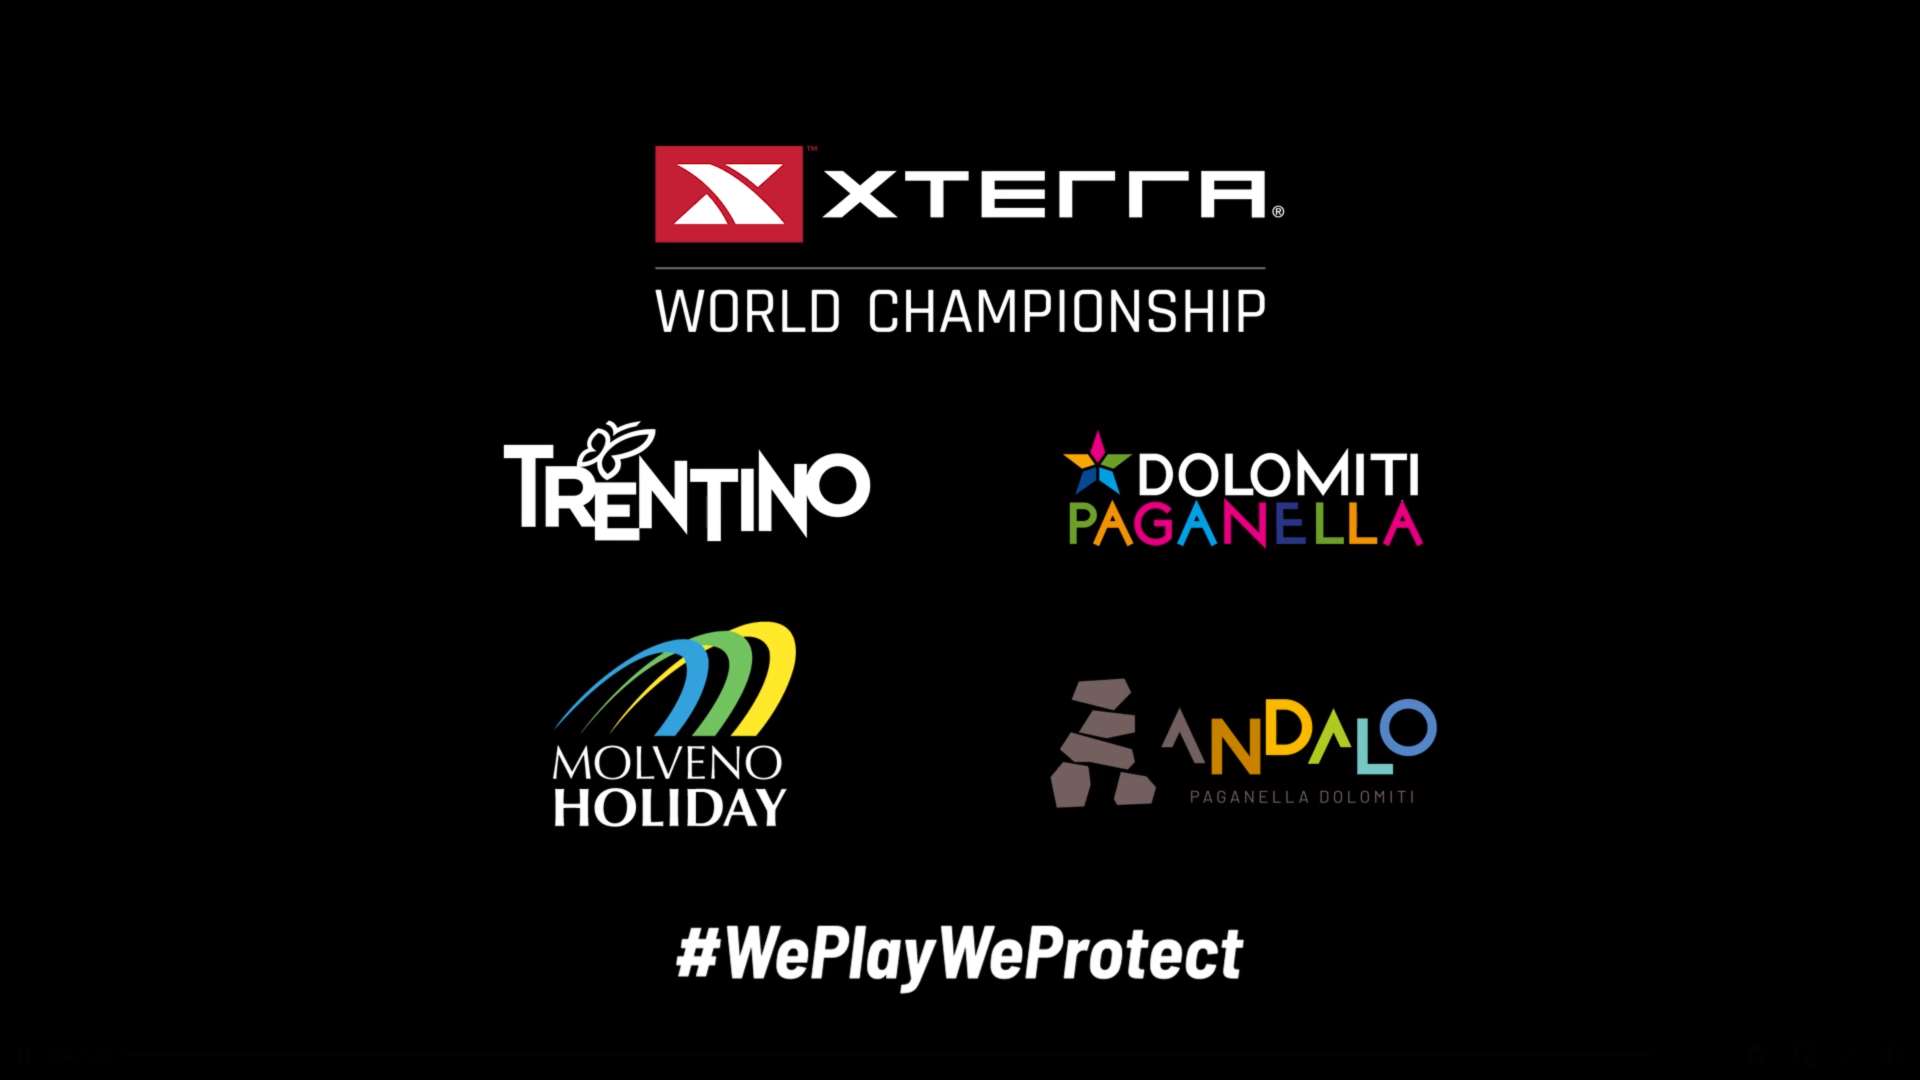 XTERRA World Championship 2022 Trentino Molveno